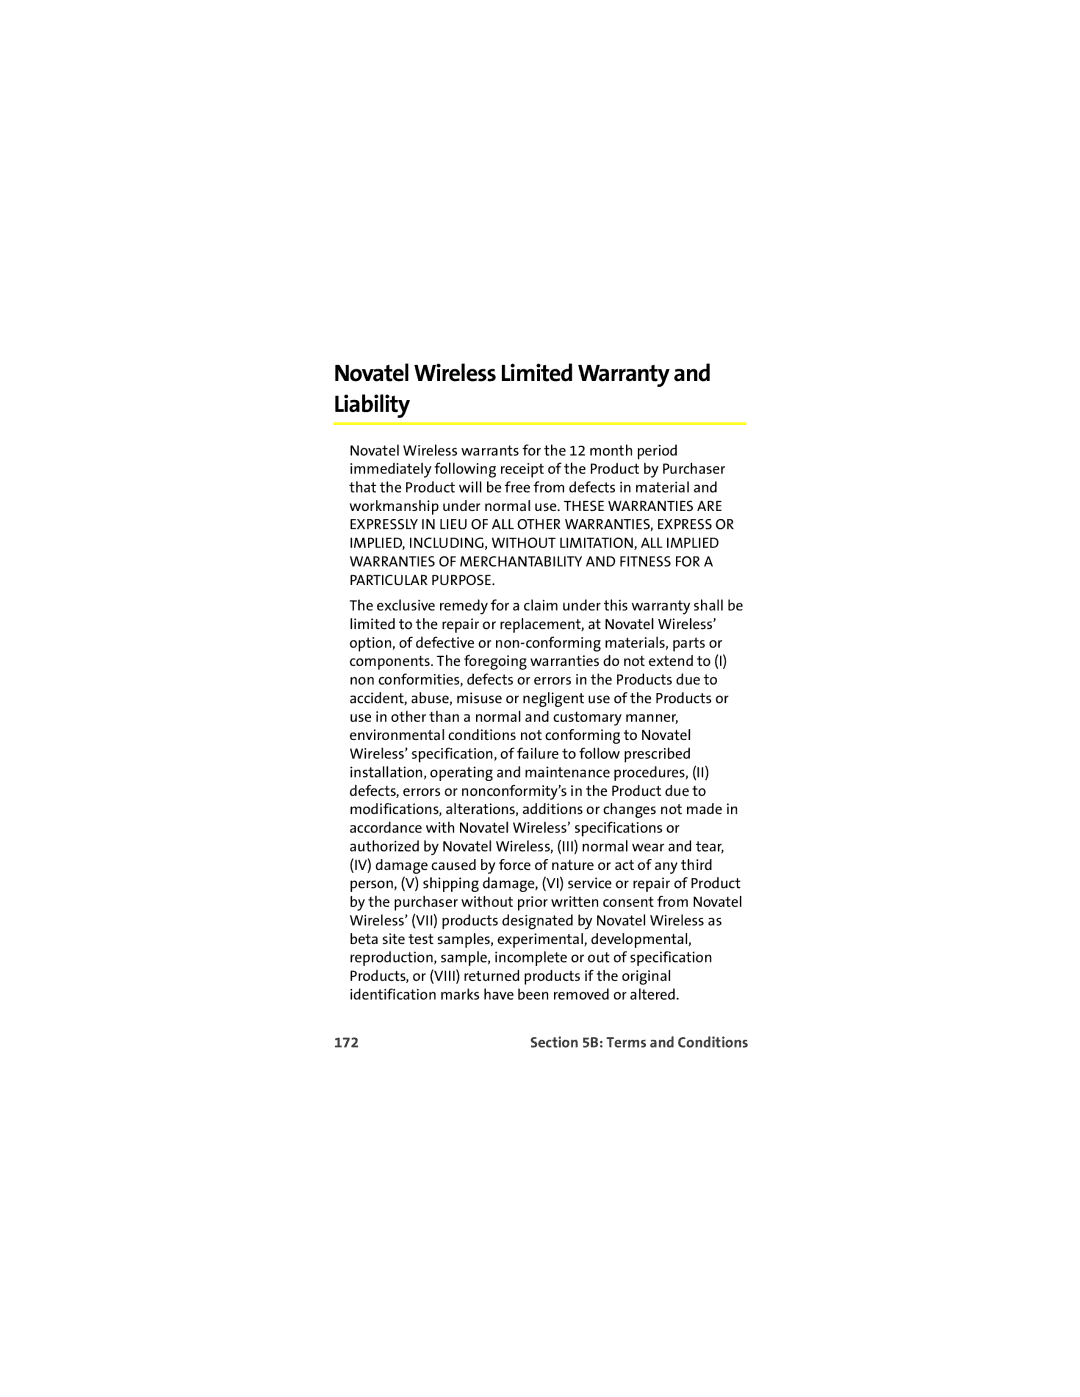 Sprint Nextel U727 manual Novatel Wireless Limited Warranty and Liability, 172 